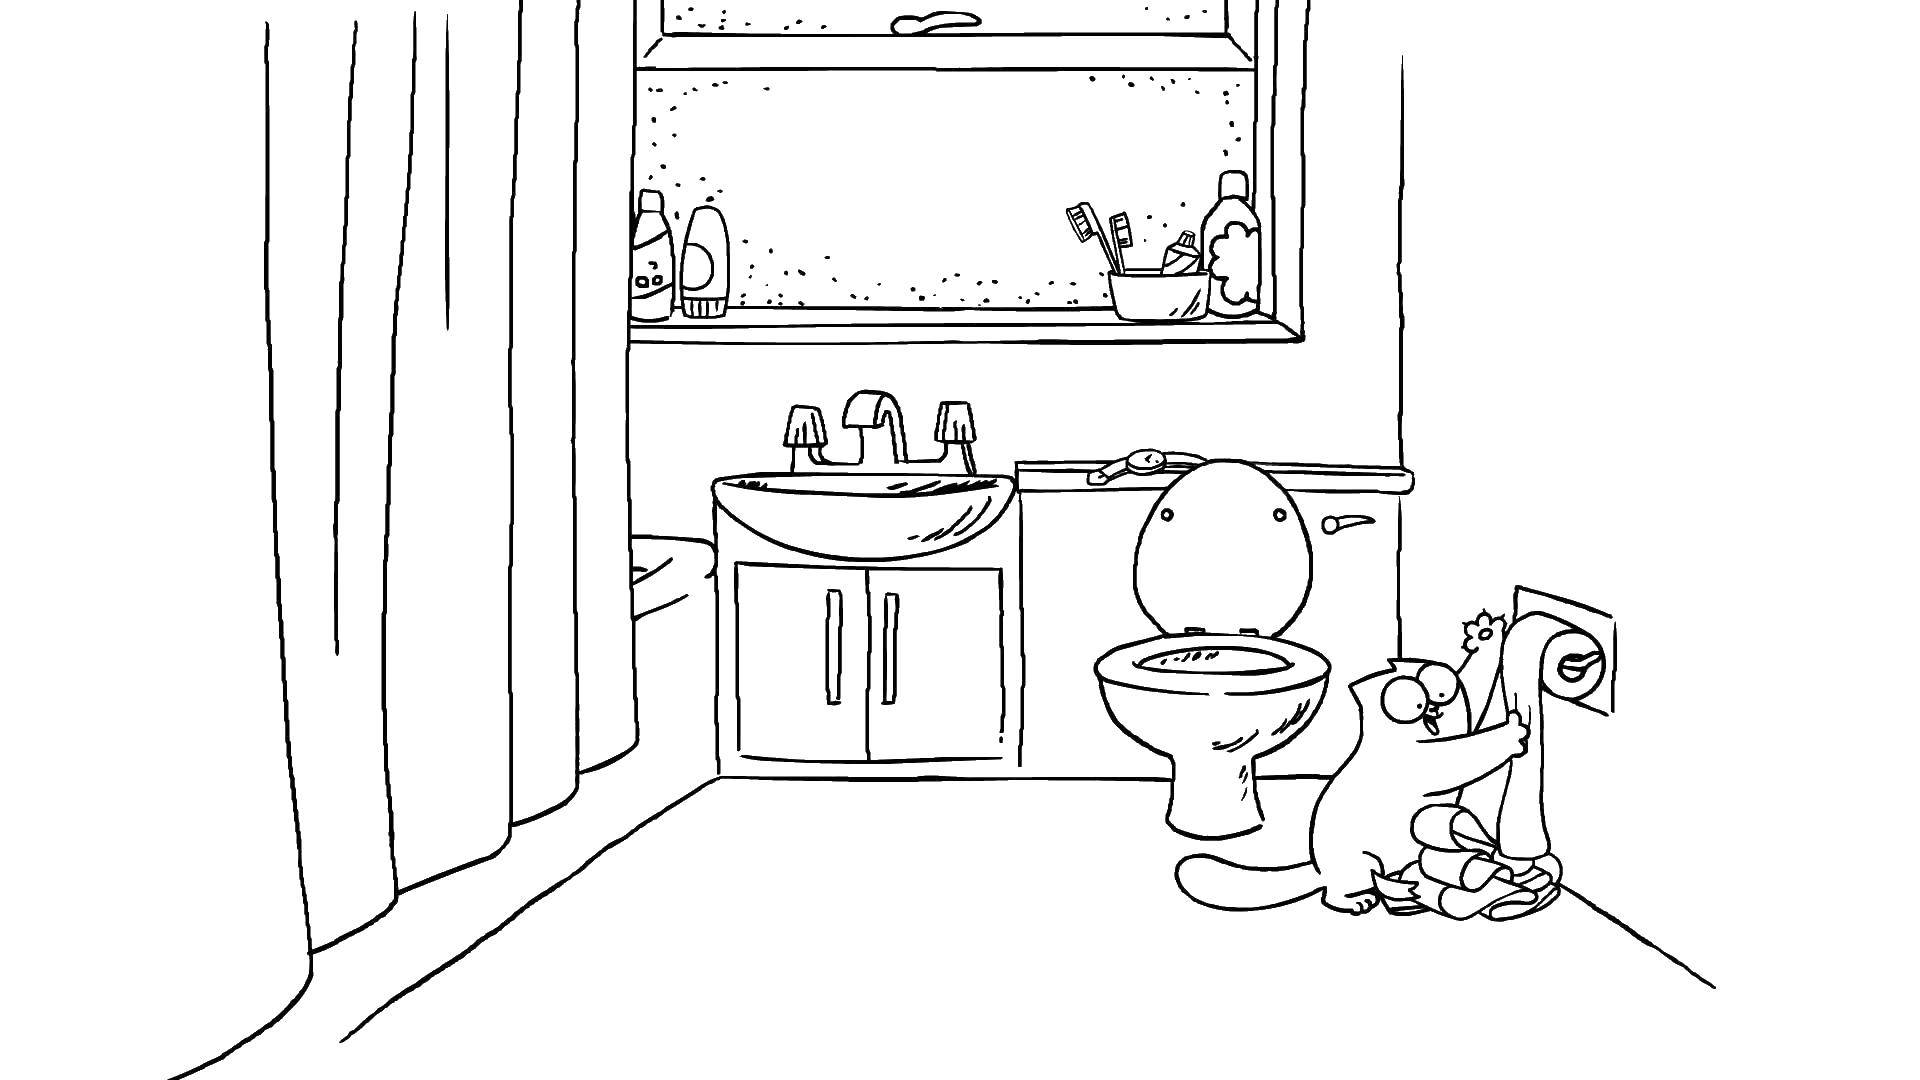 Coloring Кот играет с туалетной бумагой. Category кот саймона. Tags:  Птицы, колибри.